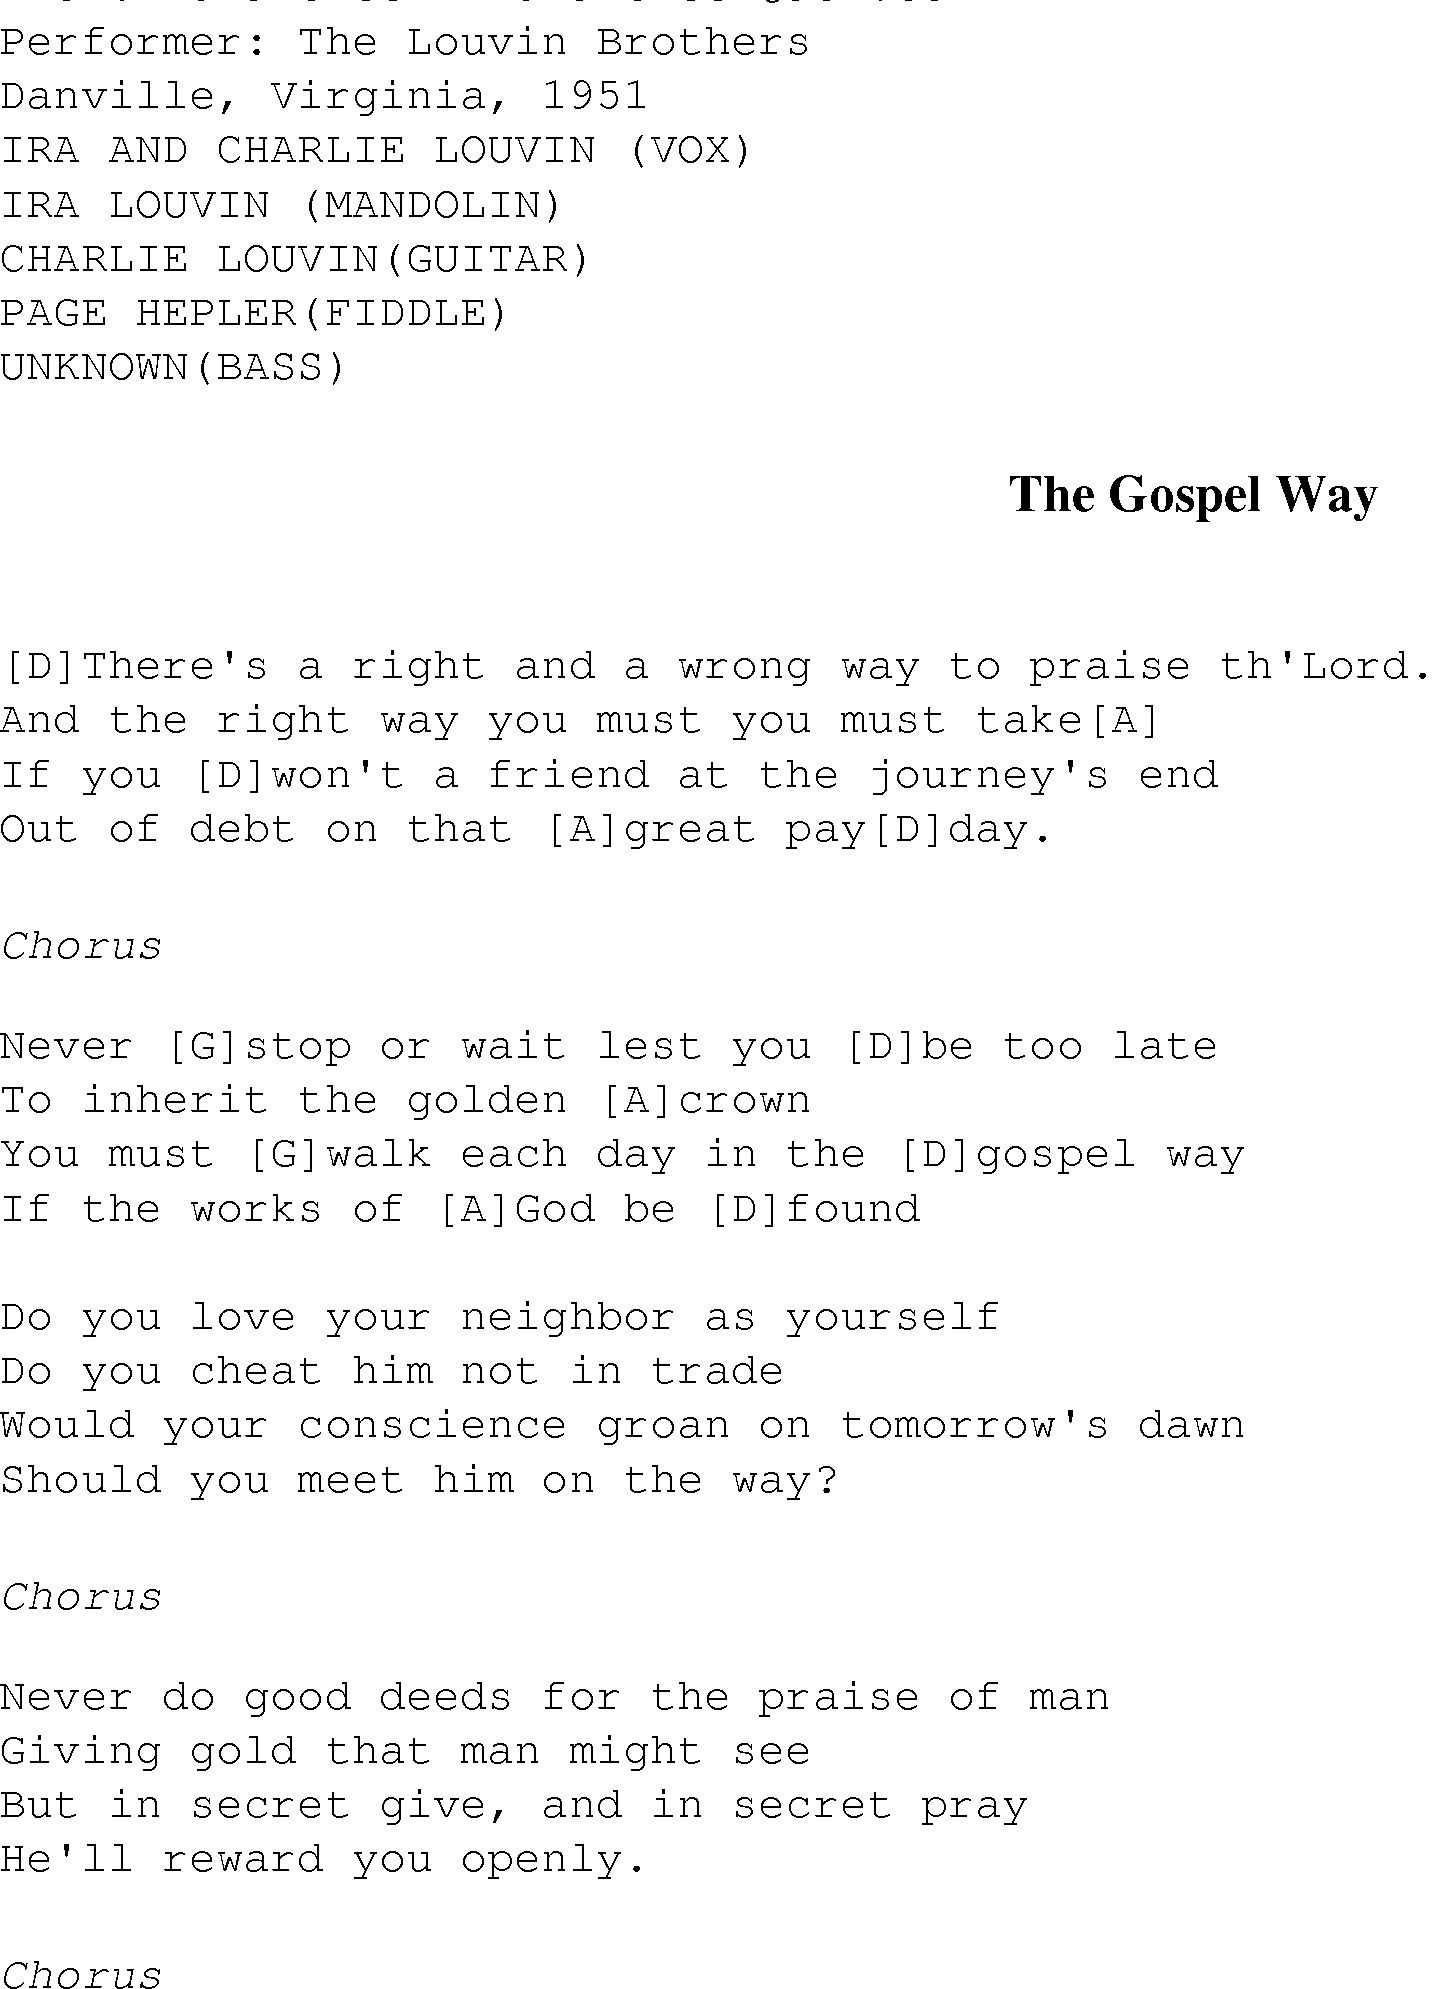 Gospel Song: gospel_way, lyrics and chords.